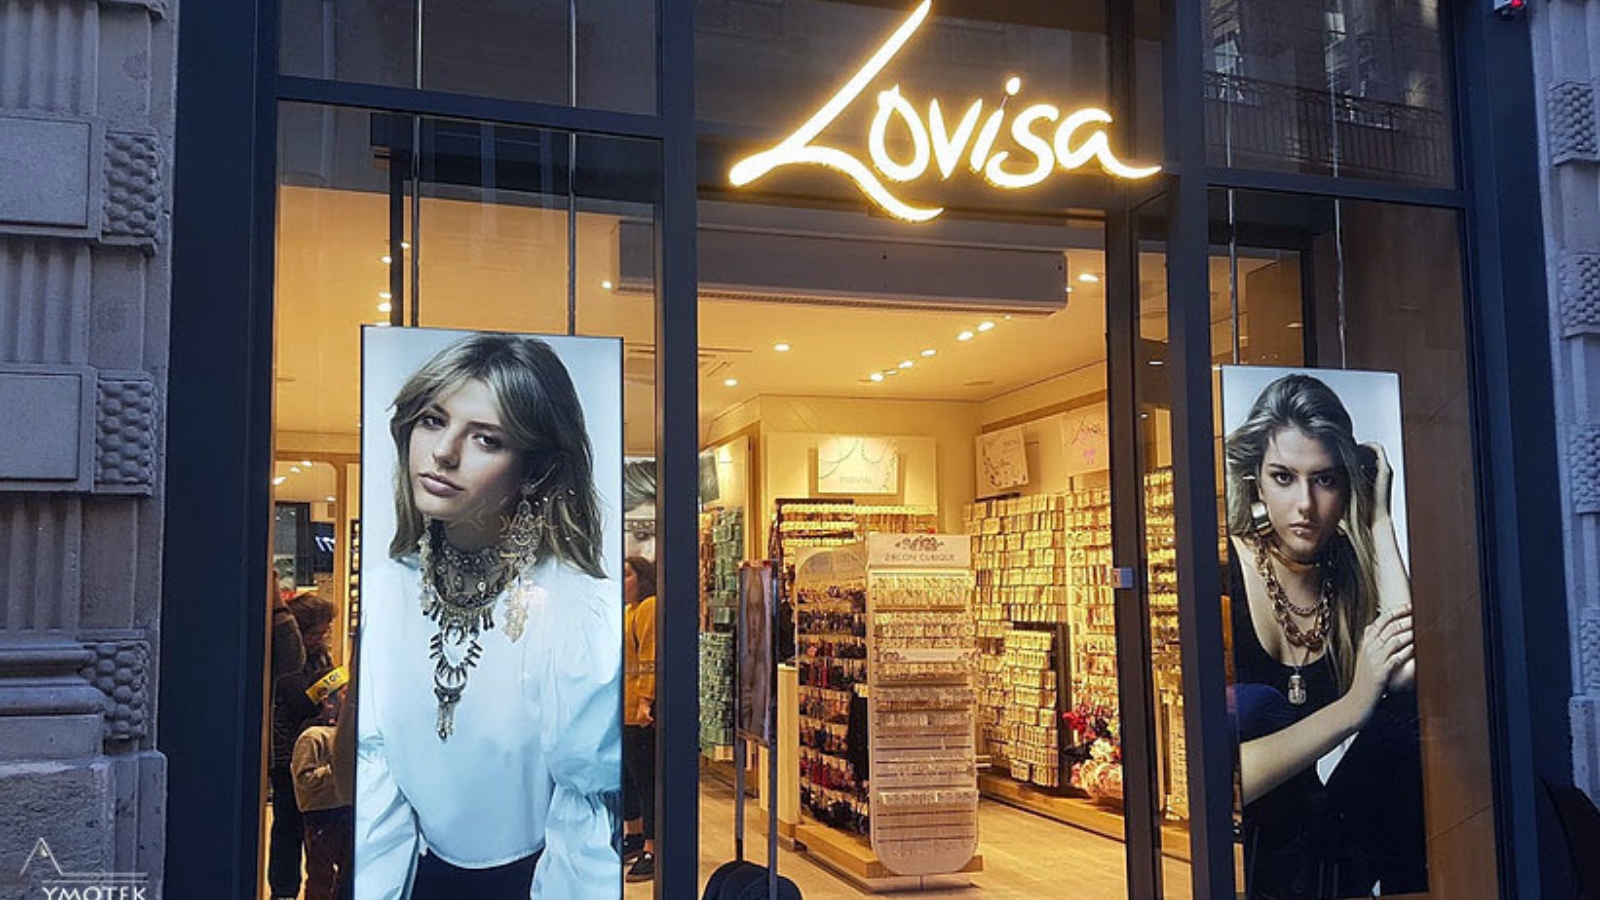 Façade magasin Lovisa